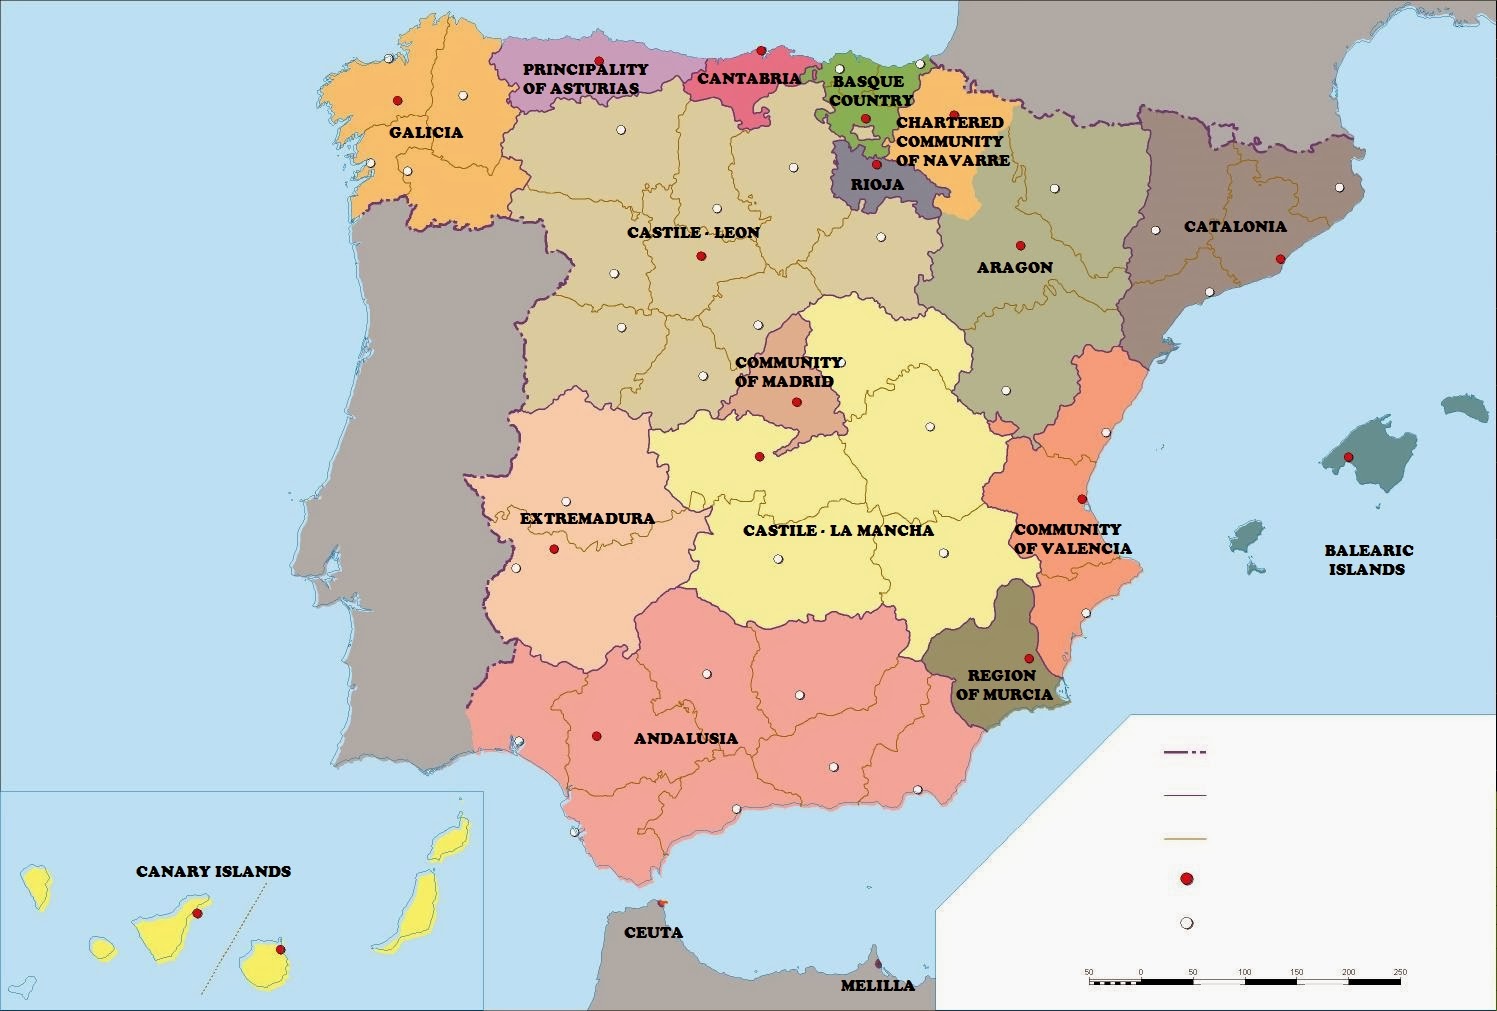 Distancia entre ciudades españolas